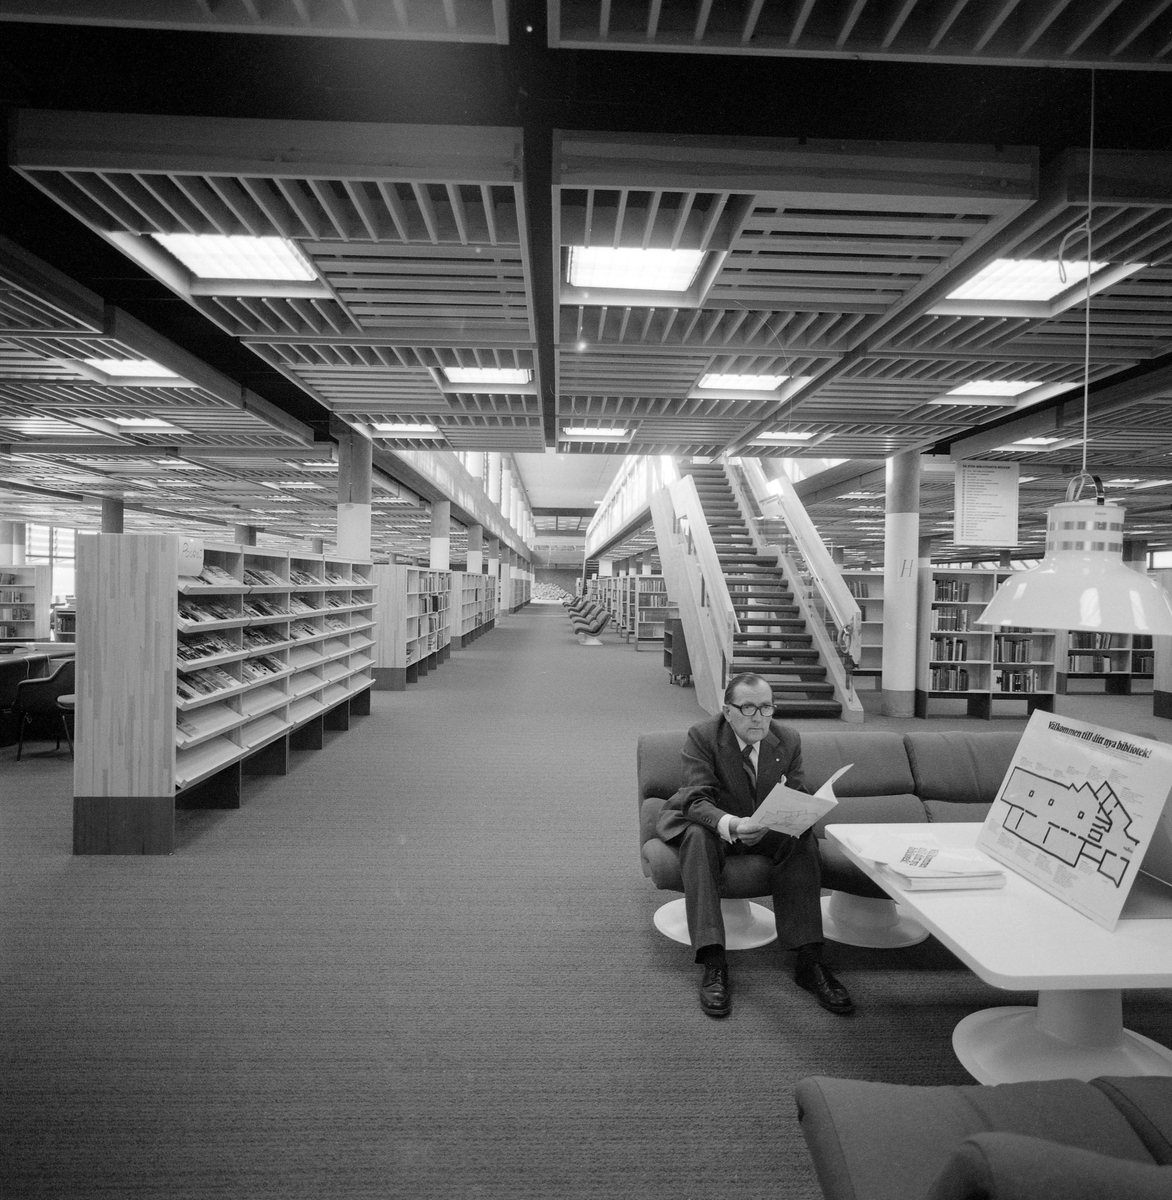 Stort, luftigt, mjukt på golvet, generöst med sittplatser i mjuka soffor och böcker förstås. Nya stifts- och stadsbiblioteket i Linköping kort efter öppnandet 1973. I en av de bekväma sofforna sitter länsbibliotekarie Åke Wretblad.